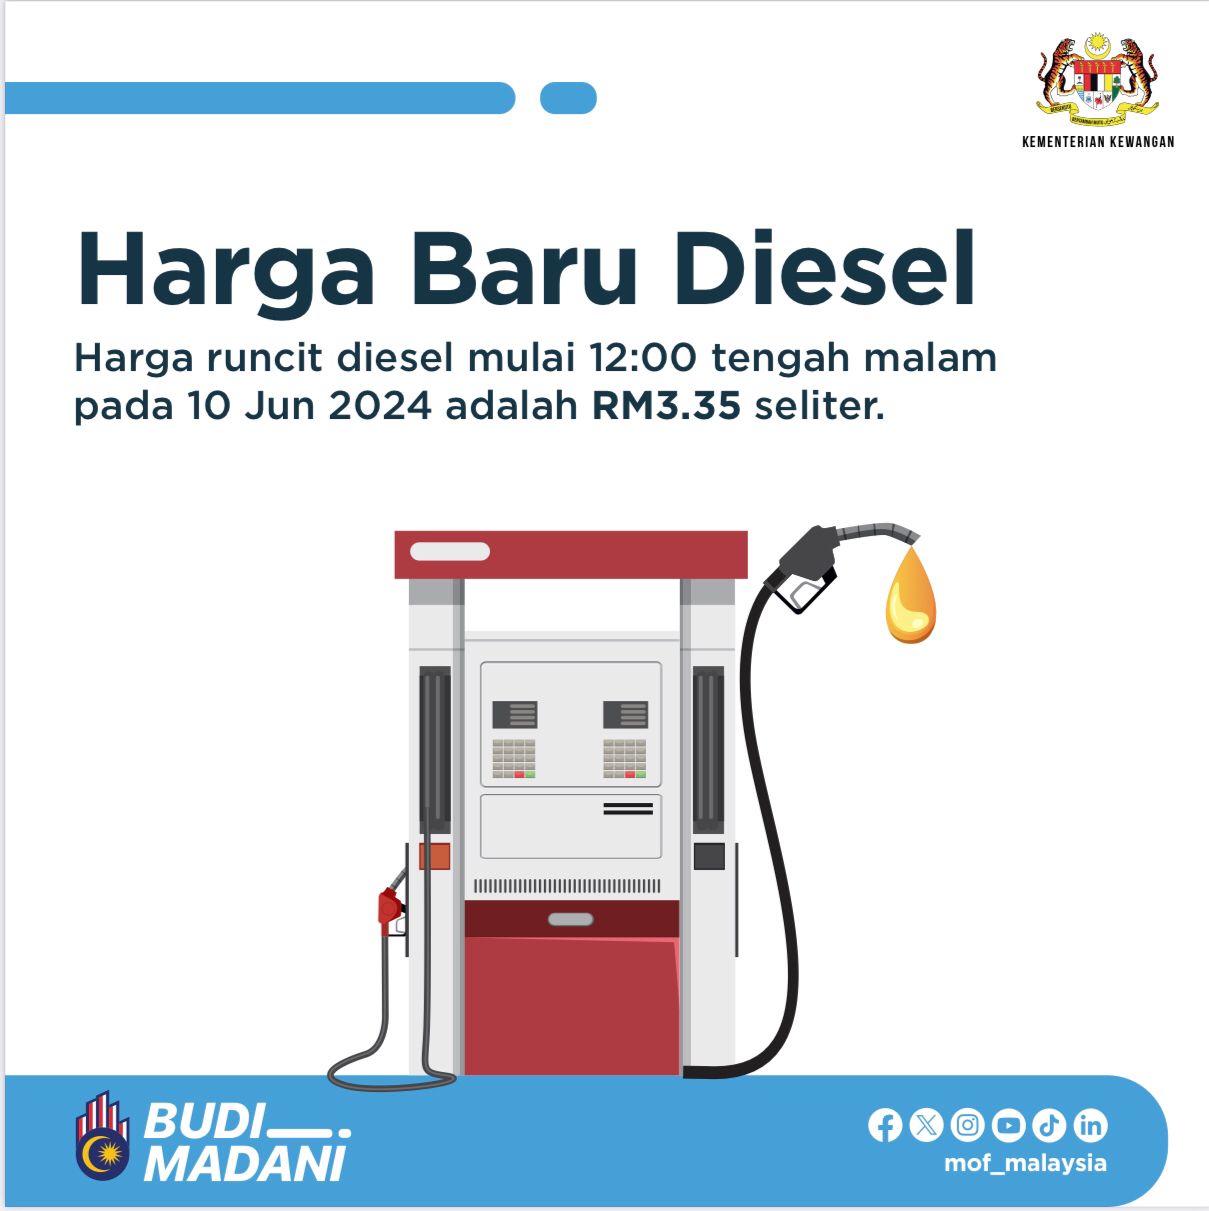 Msia diesel vs ASEAN 1